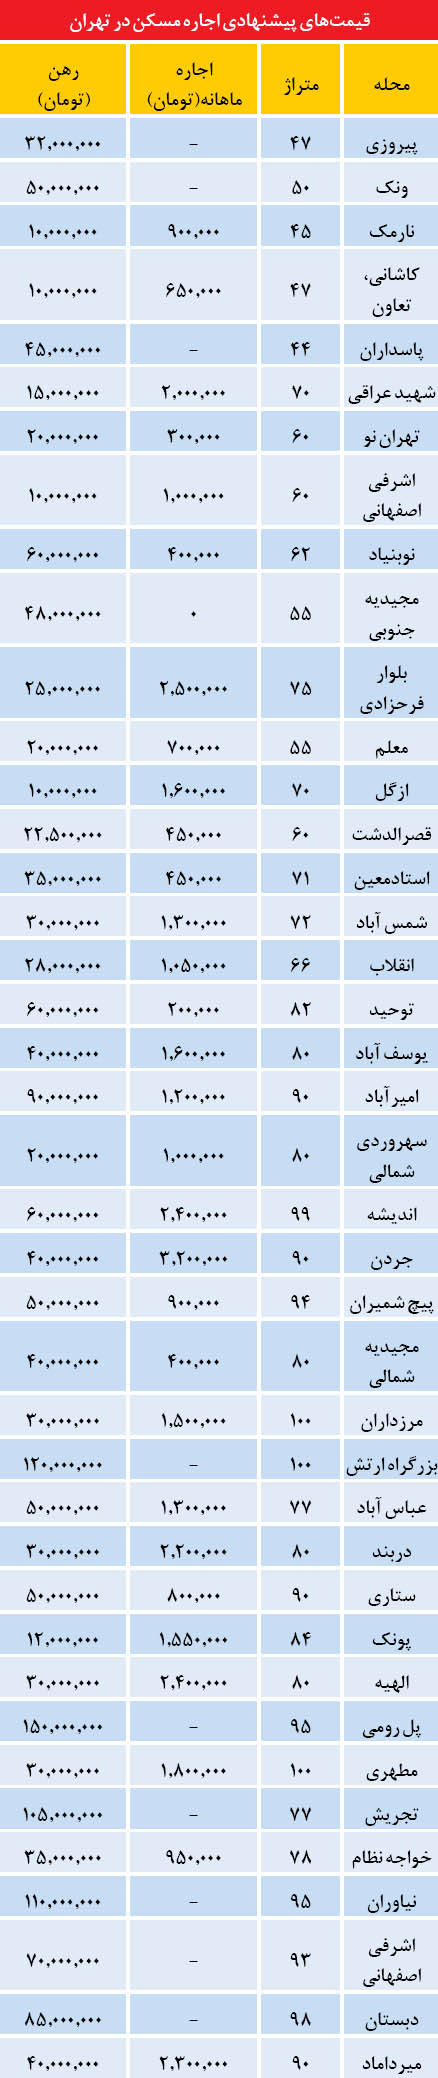 نرخ اجاره مسکن در تهران (+جدول)